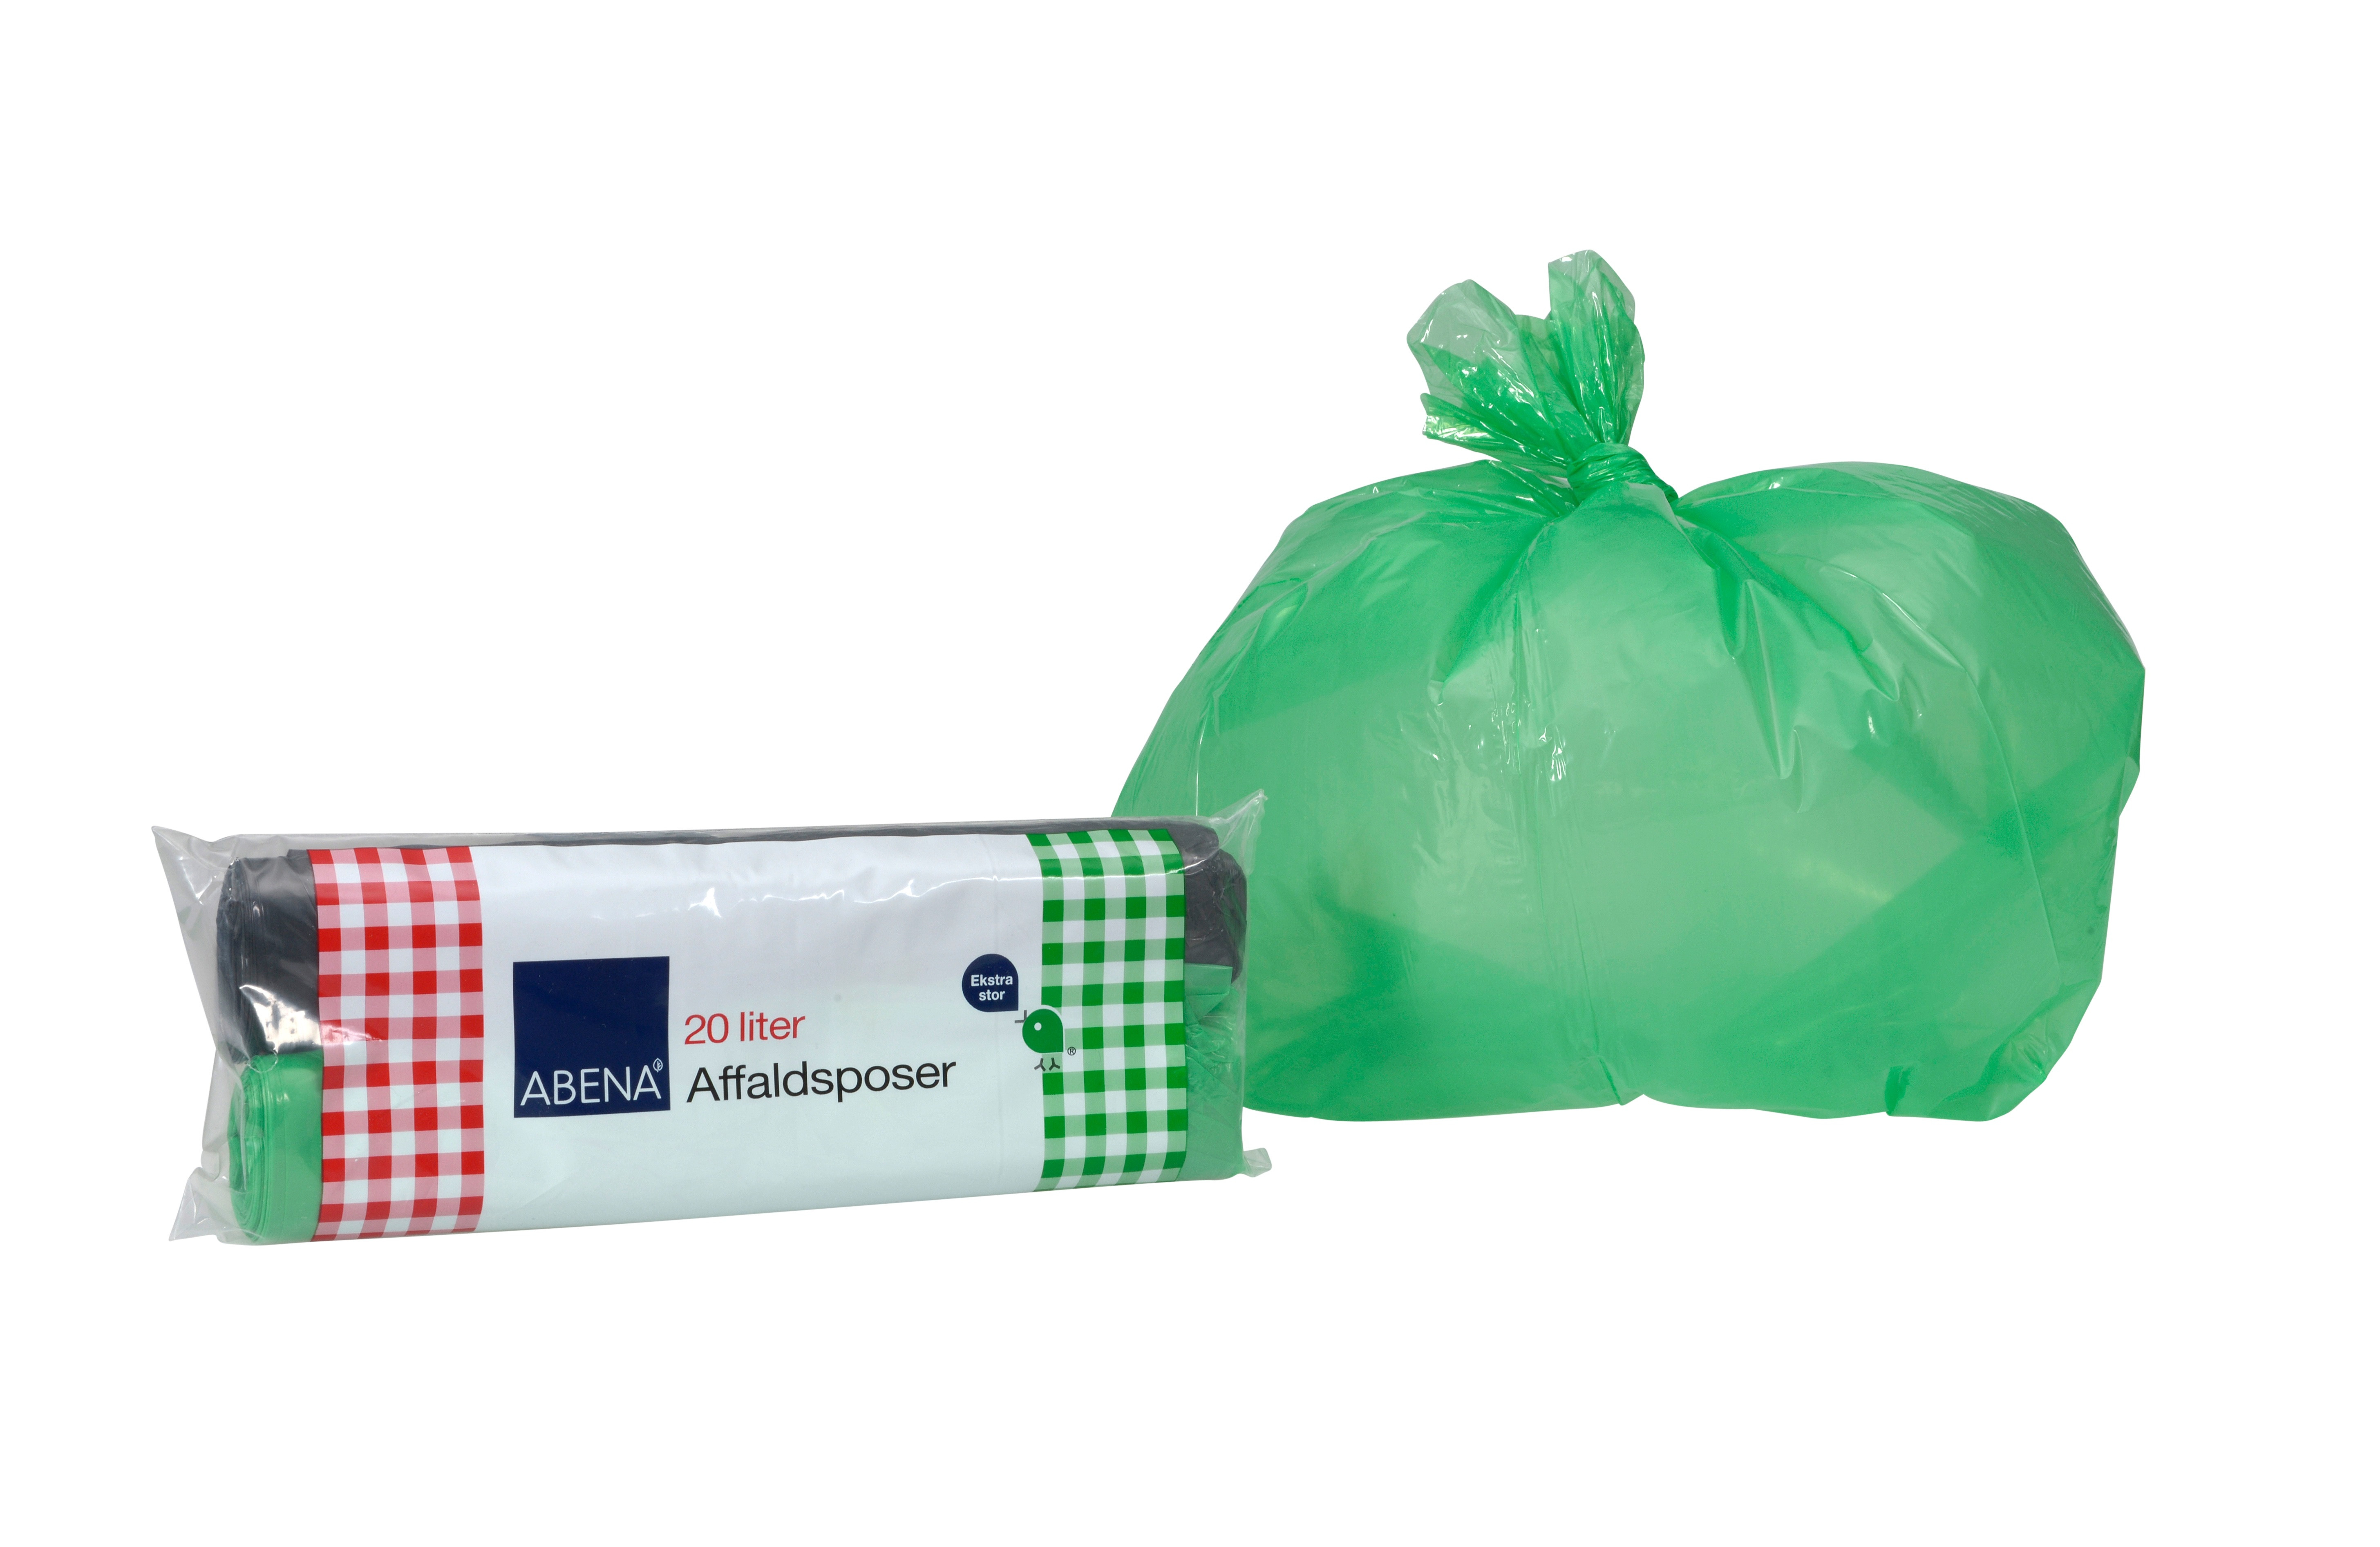 Affaldspose Rul-let Grøn og Sort 20 l 45x52 cm 25 ps/rl, 2 x 25 rll